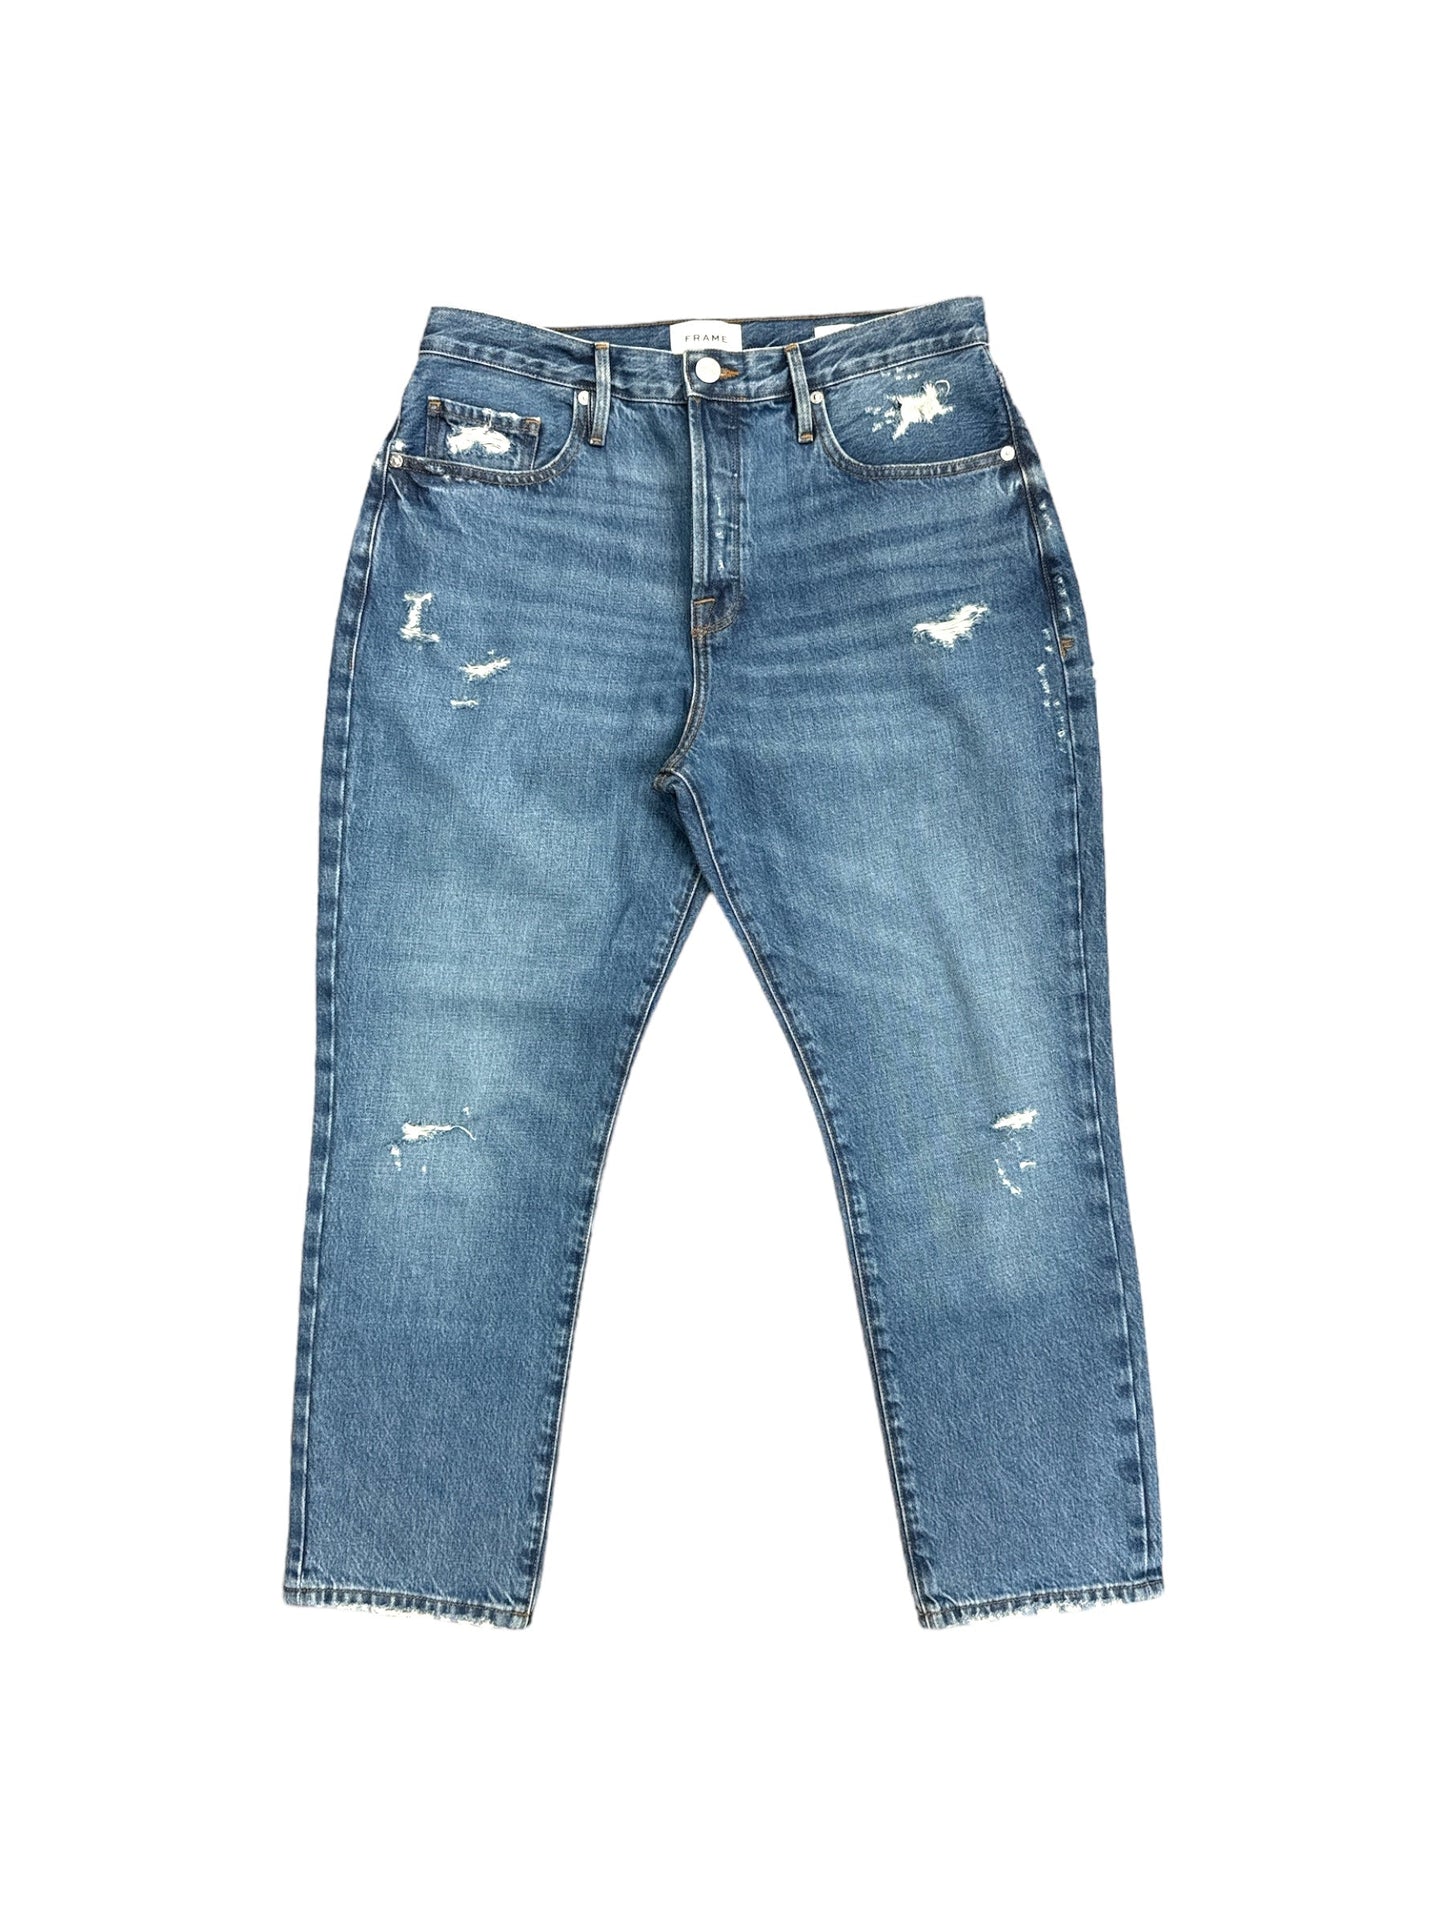 Blue Denim Jeans Designer Frame, Size 10